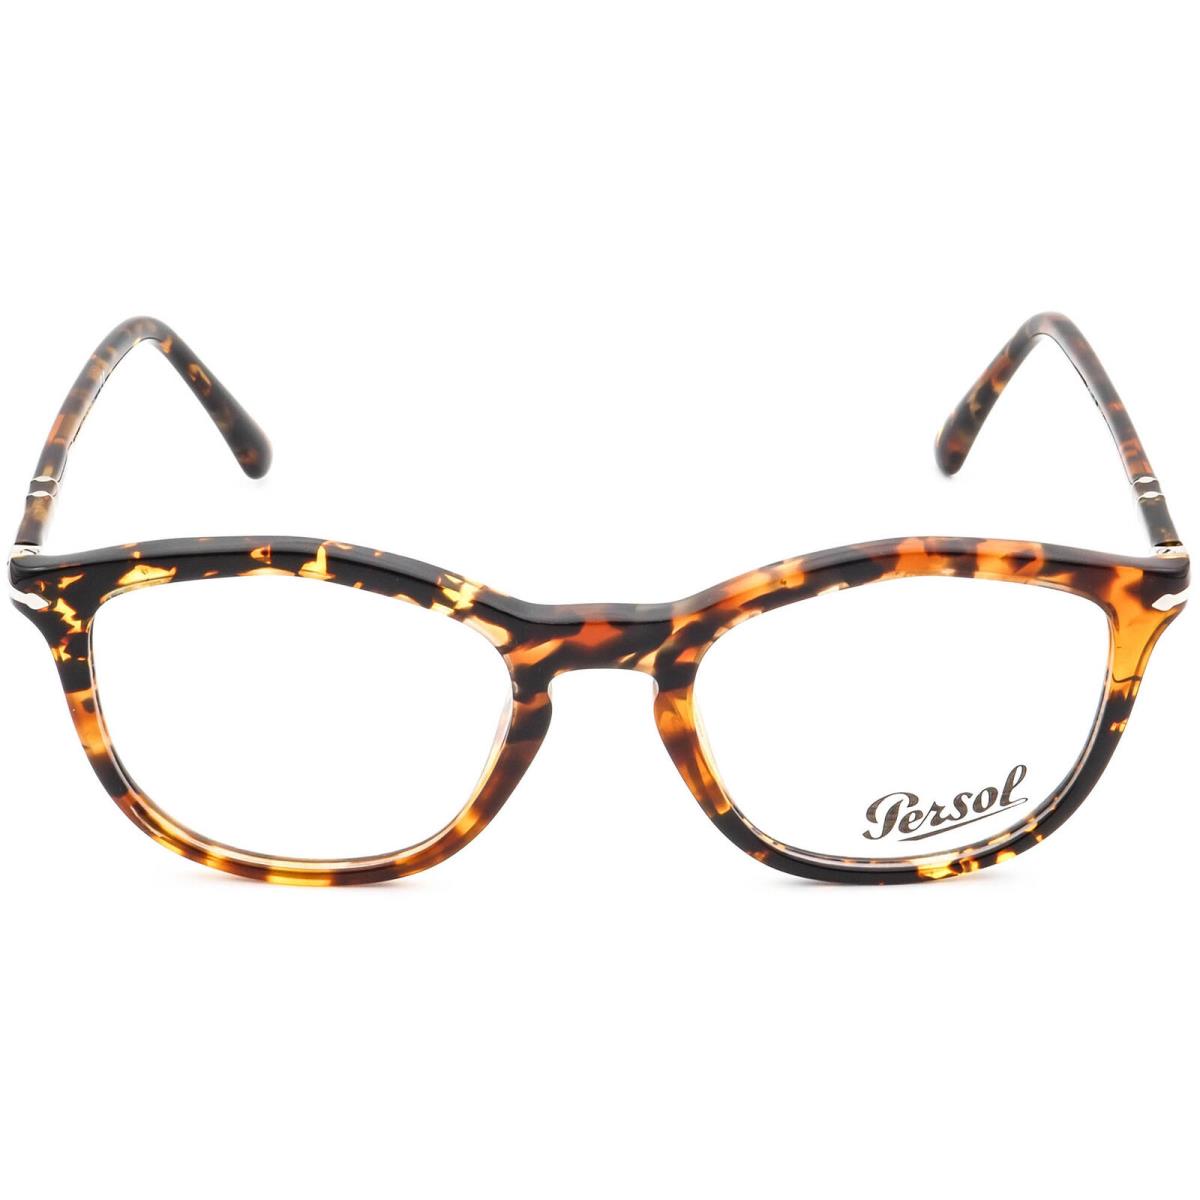 Persol Eyeglasses 3267-V 1081 Tortoise Keyhole Frame Italy 49 19 145